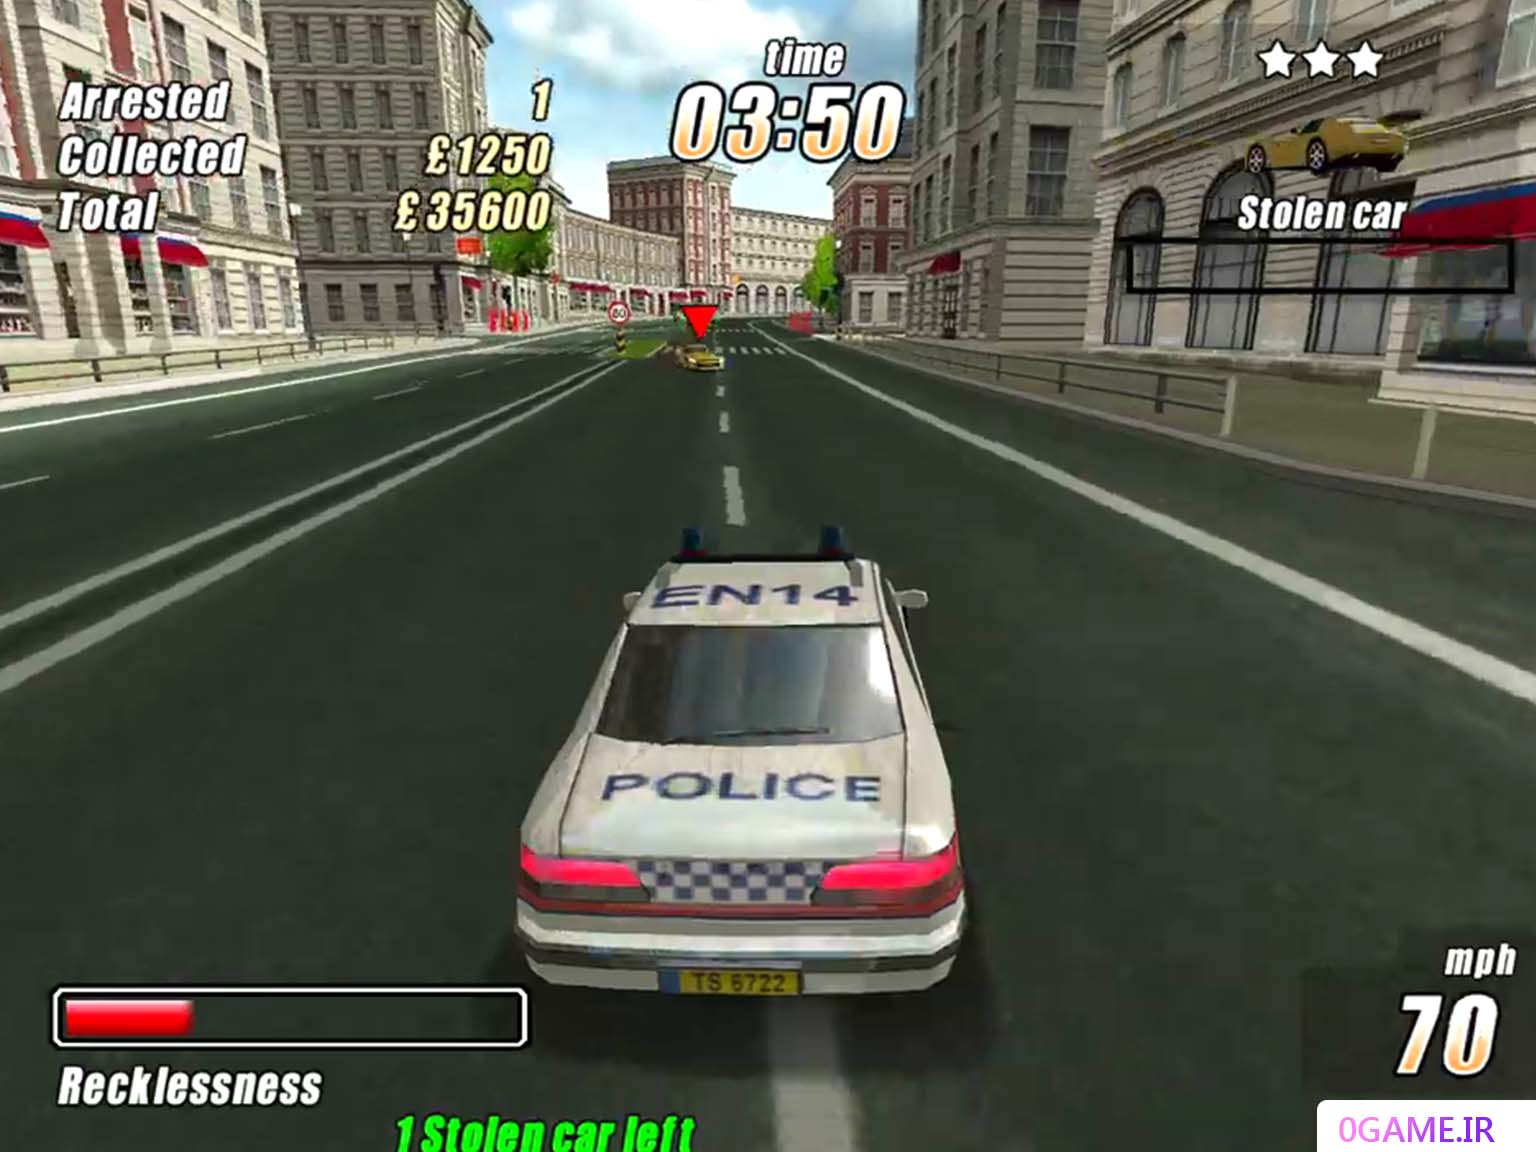 دانلود بازی خشم پلیس (London Racer: Police Madness) نسخه کامل برای کامپیوتر